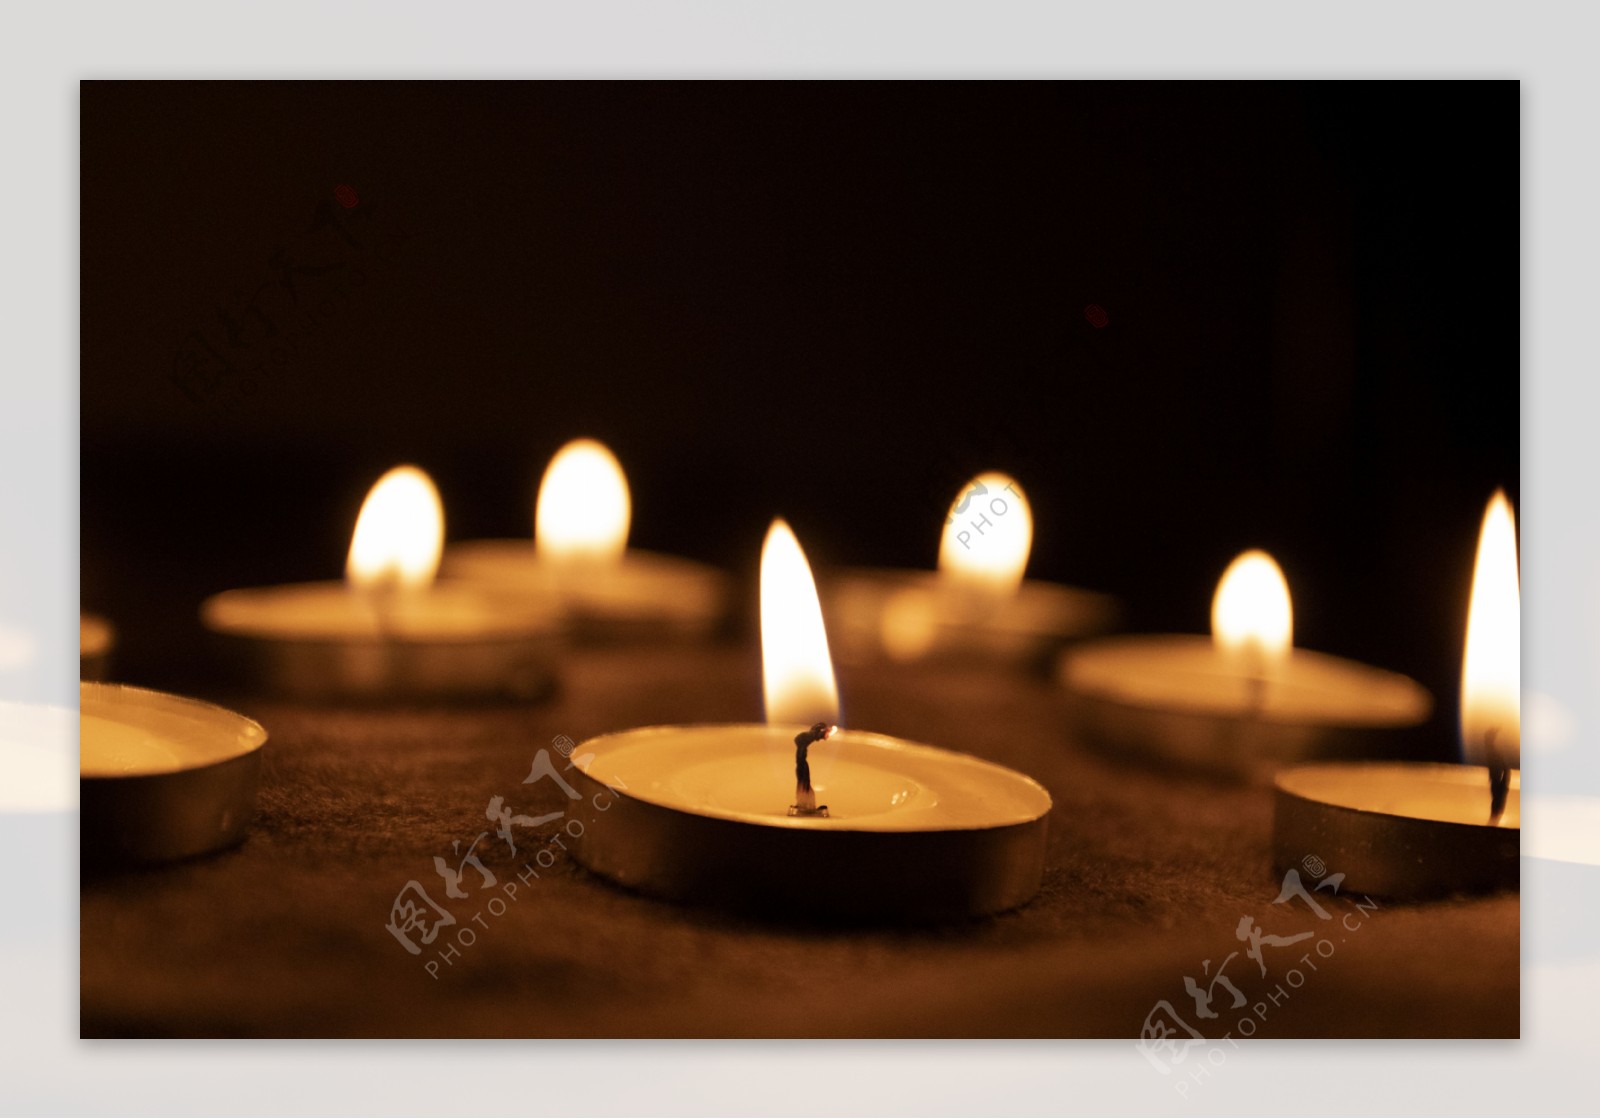 手捧蠟燭祈福圖片素材-JPG圖片尺寸6857 × 4571px-高清圖片501206057-zh.lovepik.com